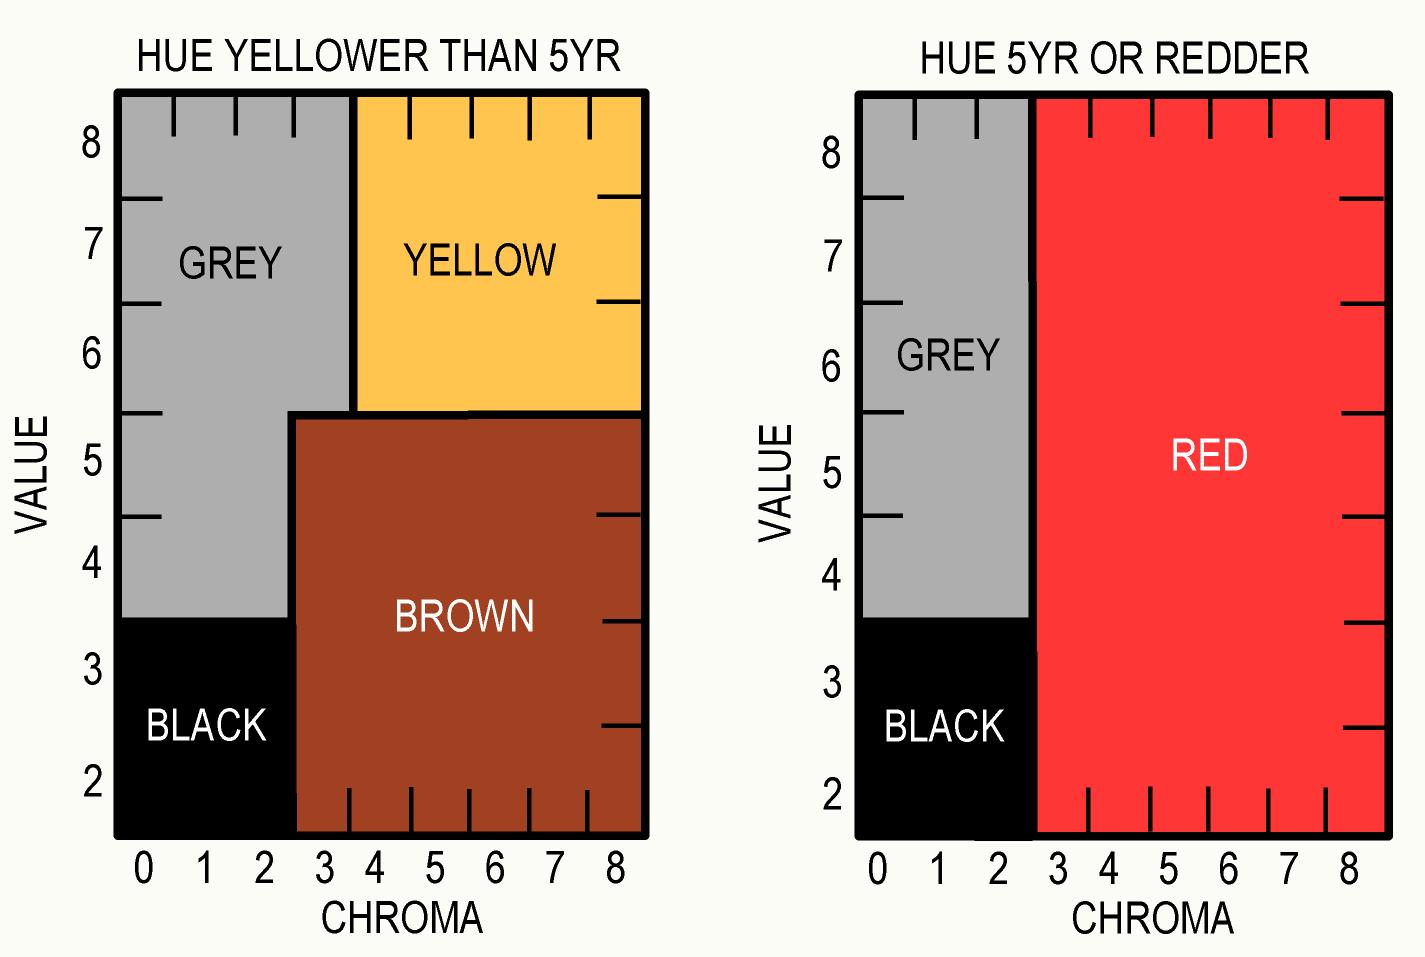 Color chart, Color, Class